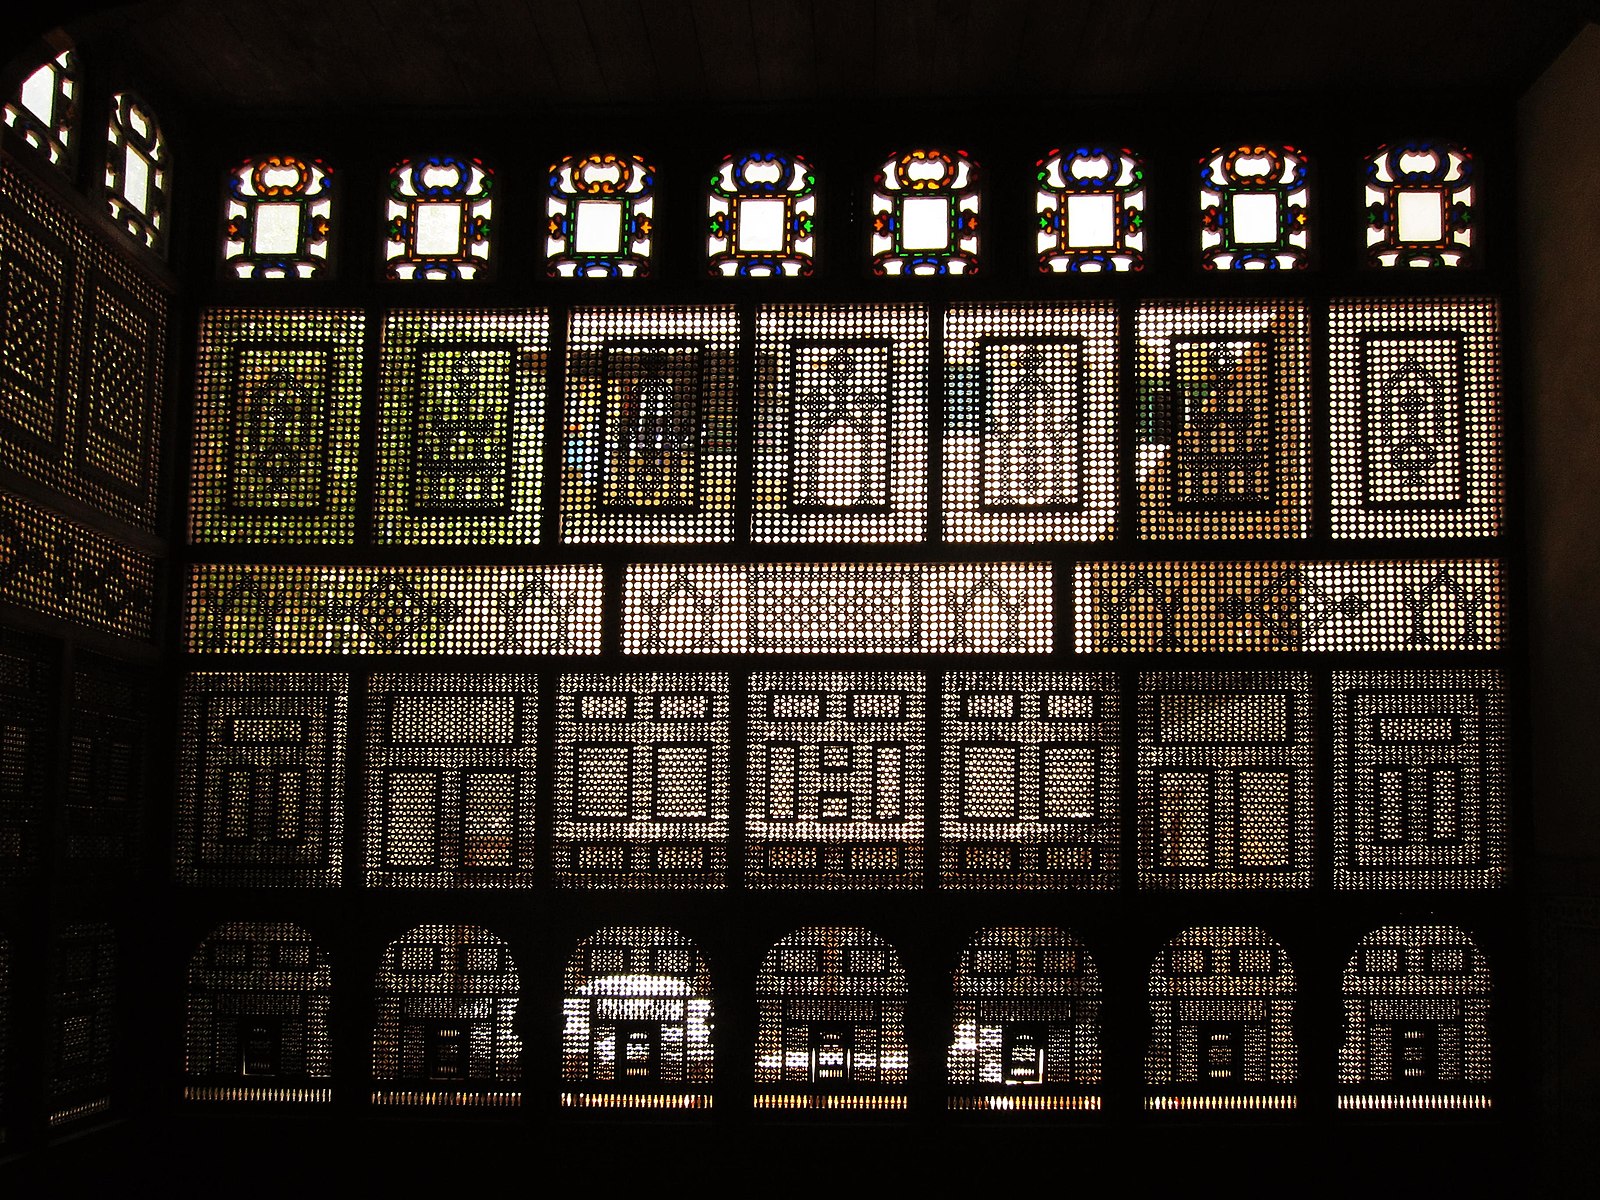 mashrabiya window wikimedia comonns